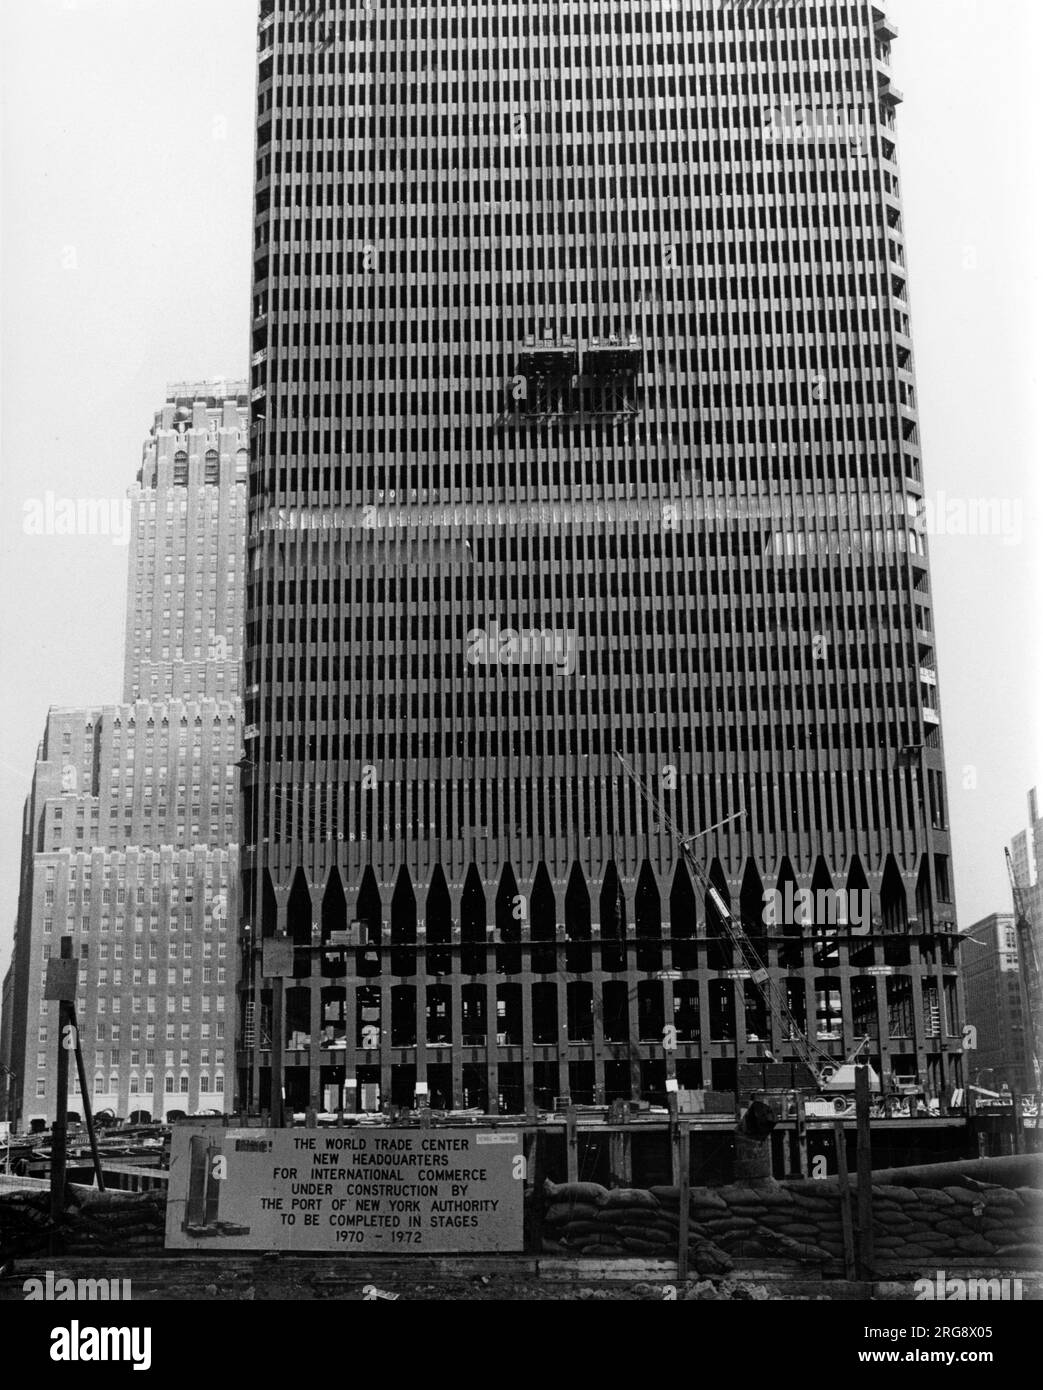 World Trade Centre, nouveau siège du commerce international, en construction par l'autorité du port de New York, qui sera achevé aux étapes 1970 à 1972. Banque D'Images